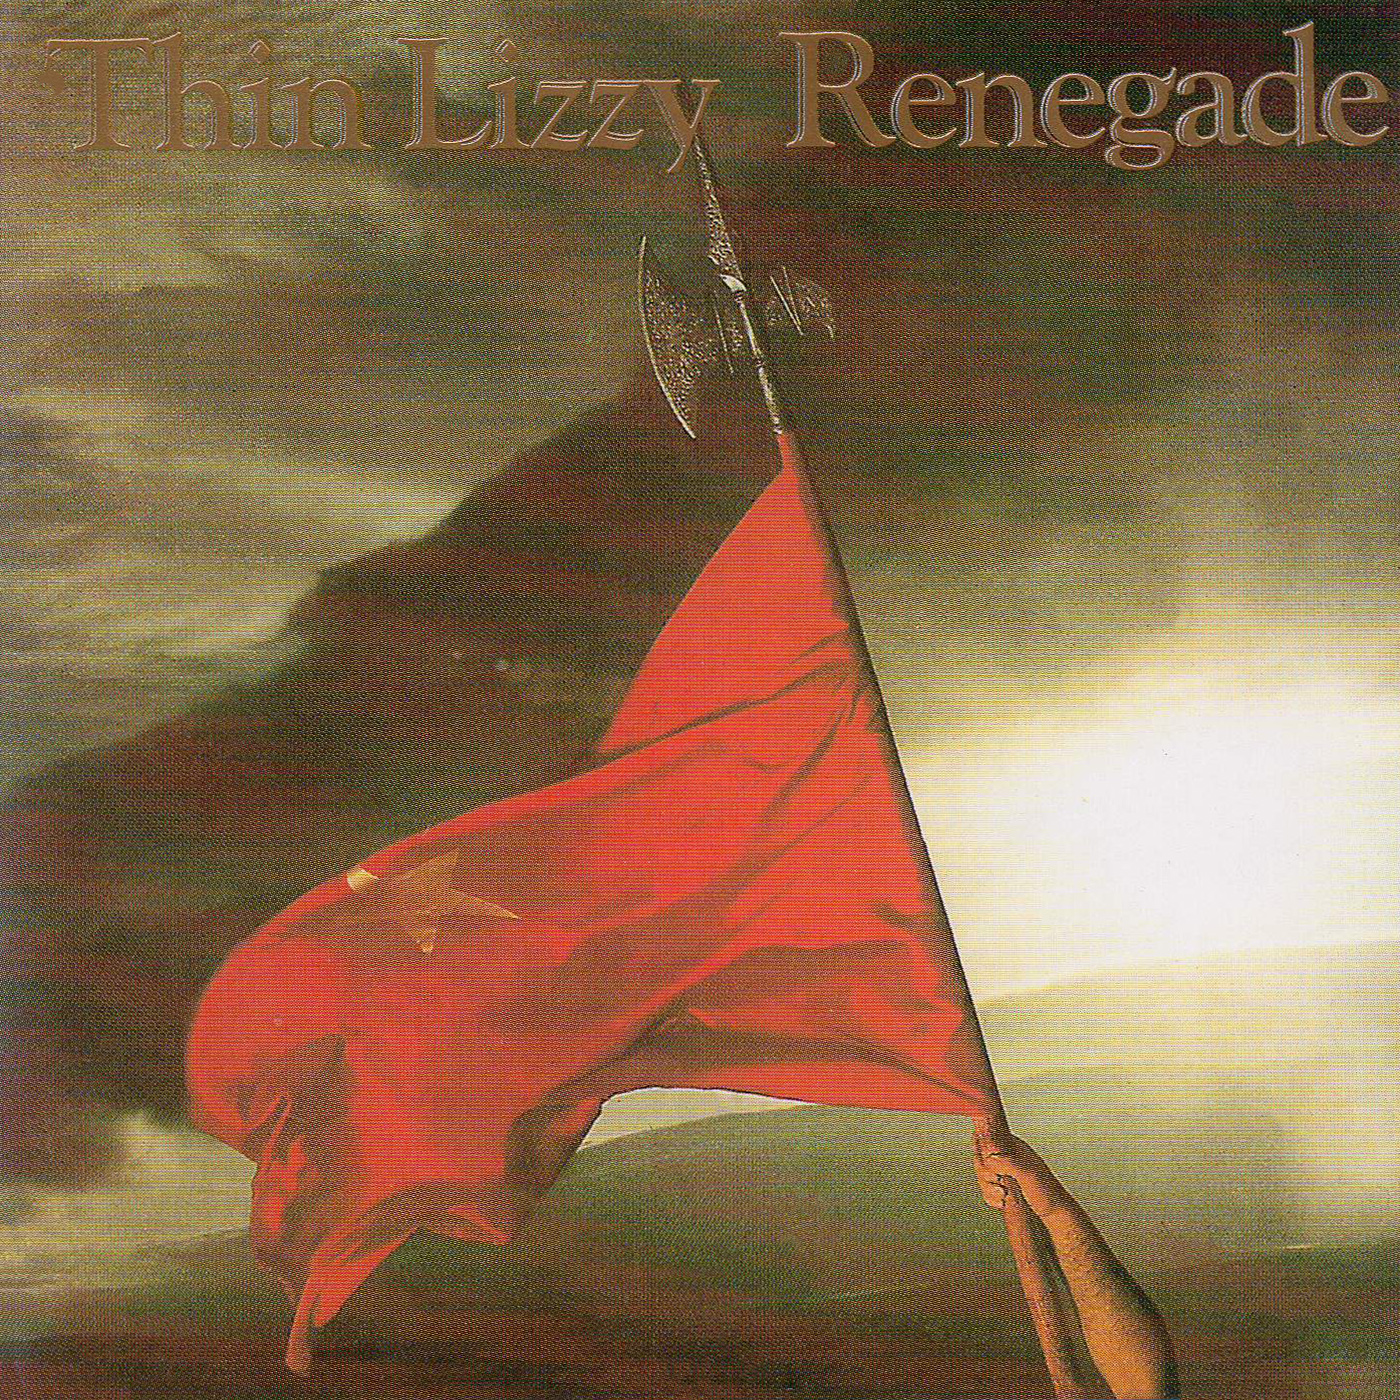 Thin Lizzie-1981-Renegade [842 435-2]